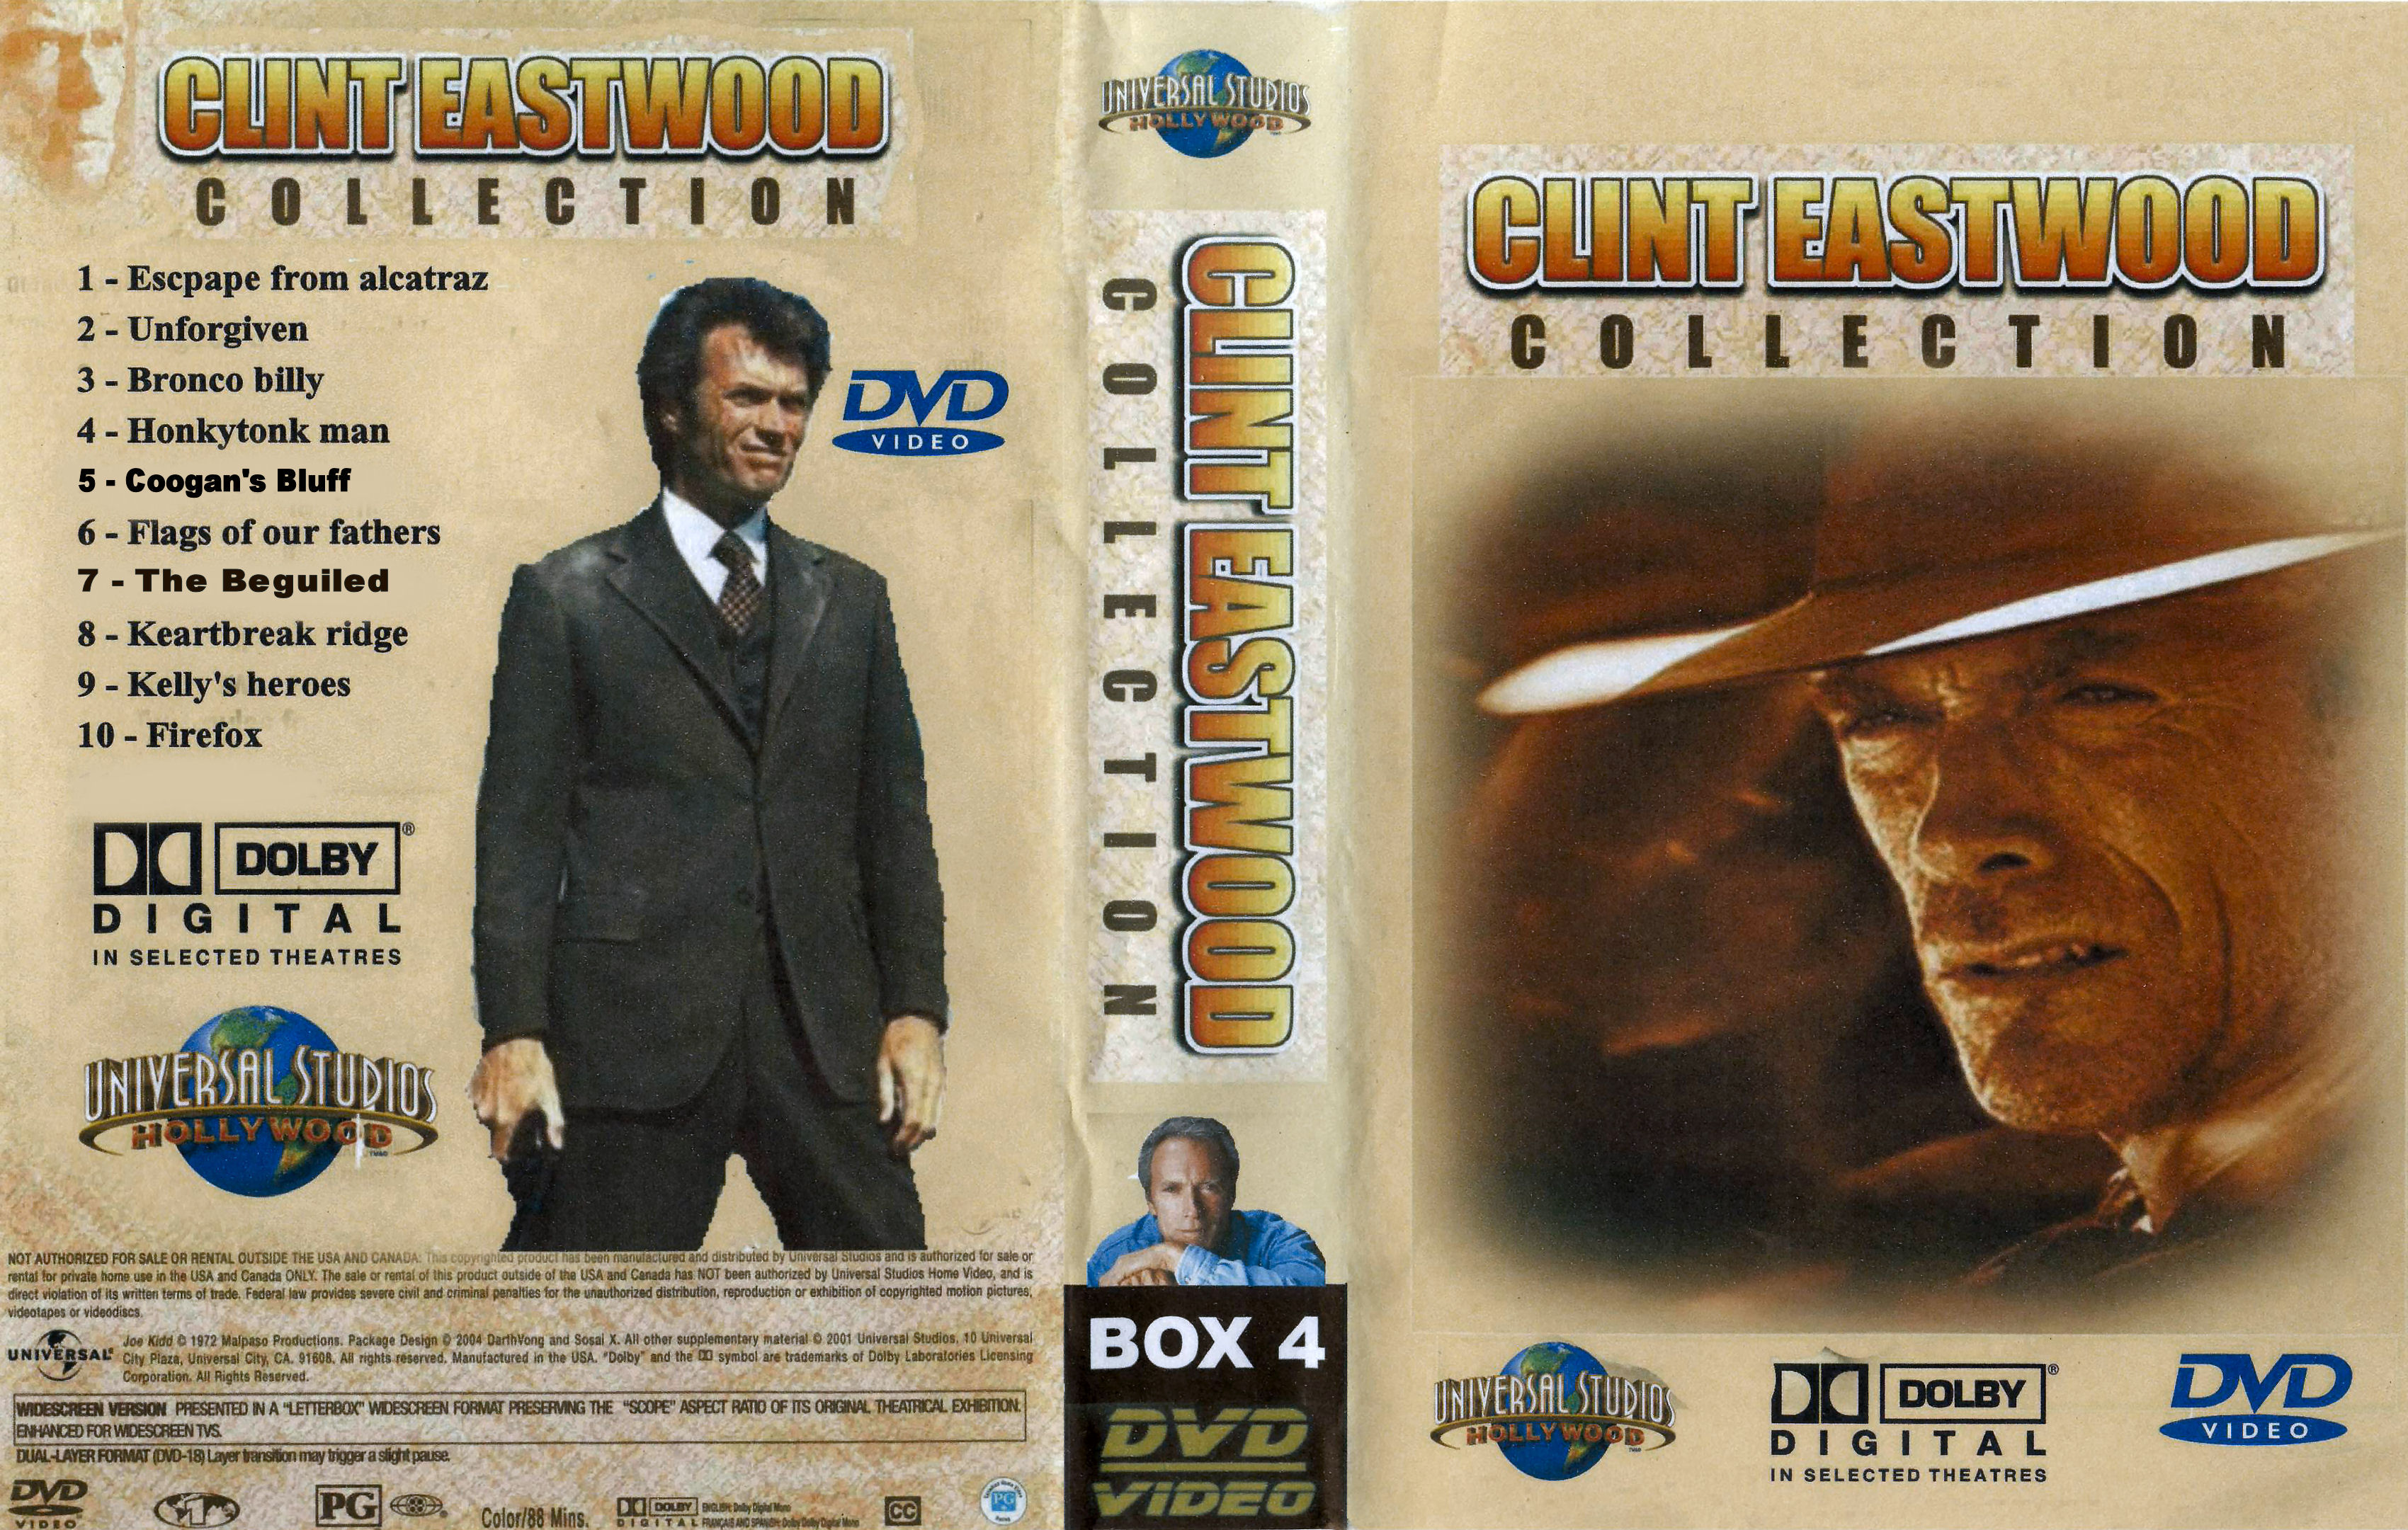 Clint Eastwood Collectie Box 4 DvD 6 van 10